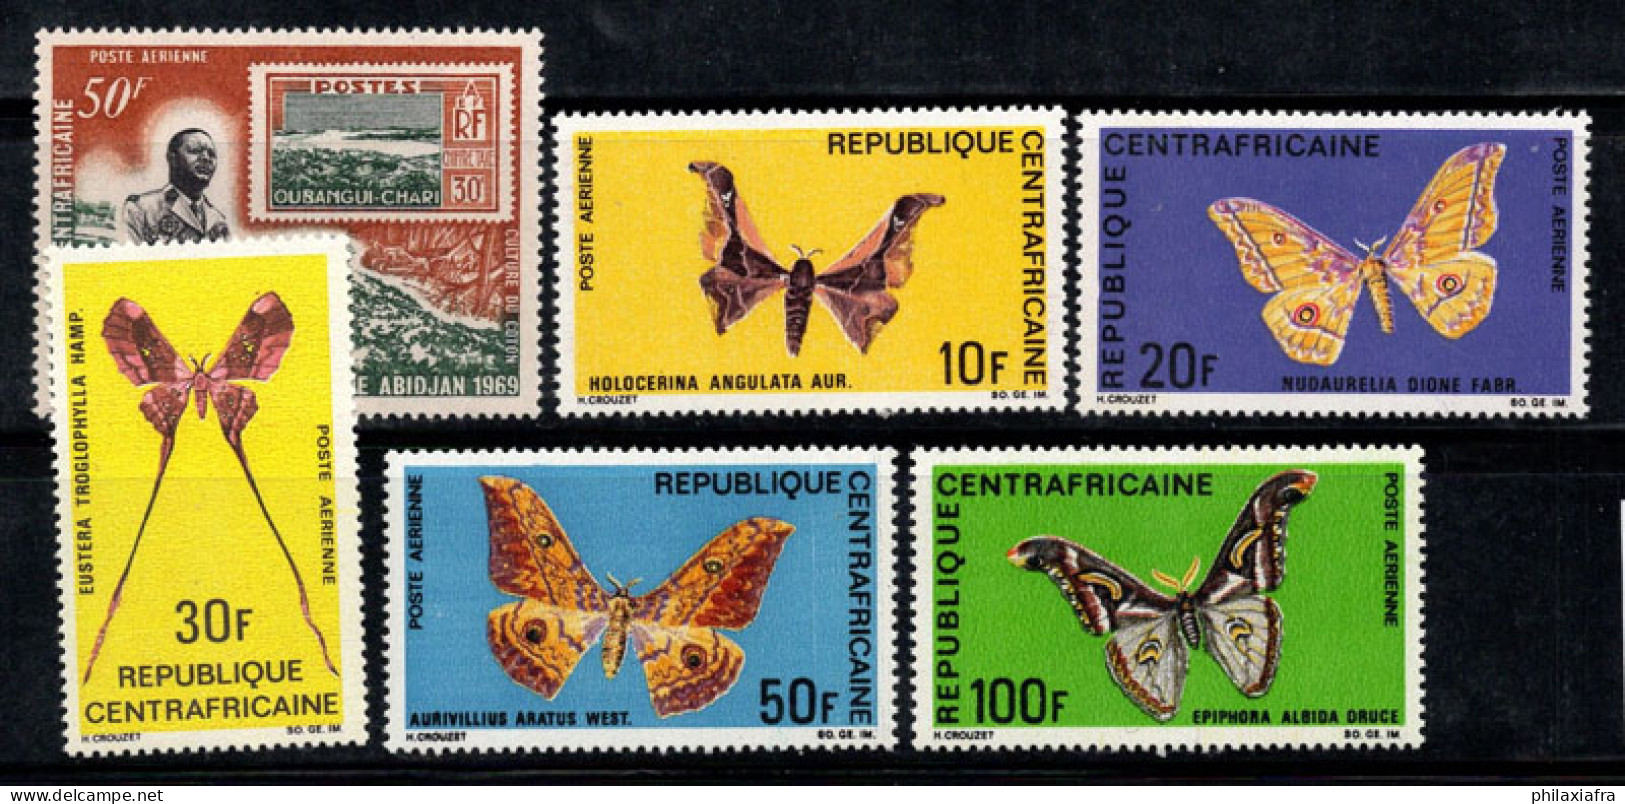 République Centrafricaine 1969 Mi. 182-187 Neuf ** 100% PHILEXAFRIQUE, PAPILLONS - Repubblica Centroafricana